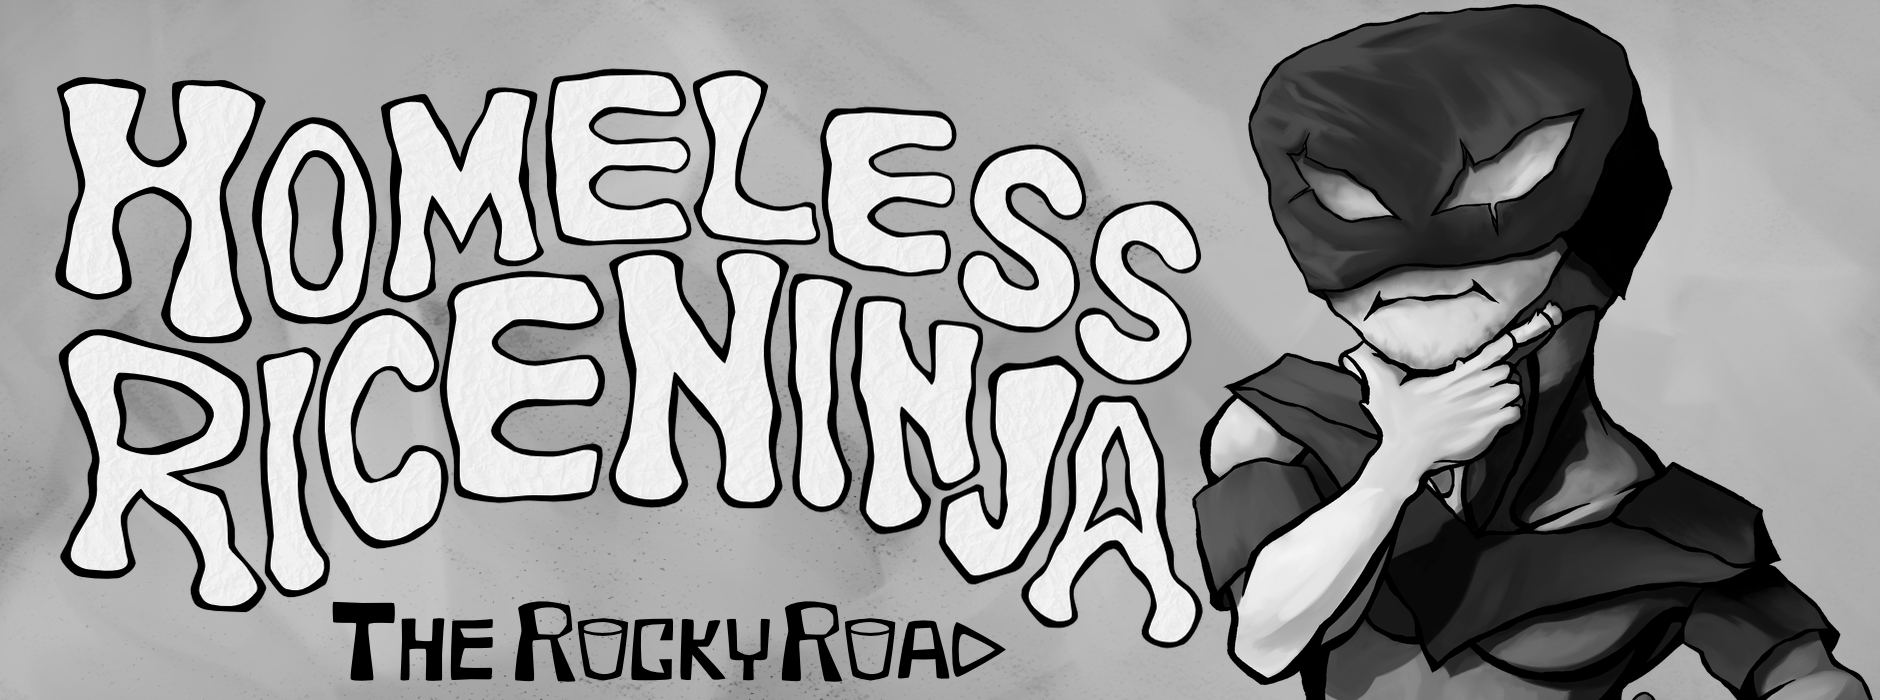 Homeless Rice Ninja: The Rocky Road - Act 1 + 2